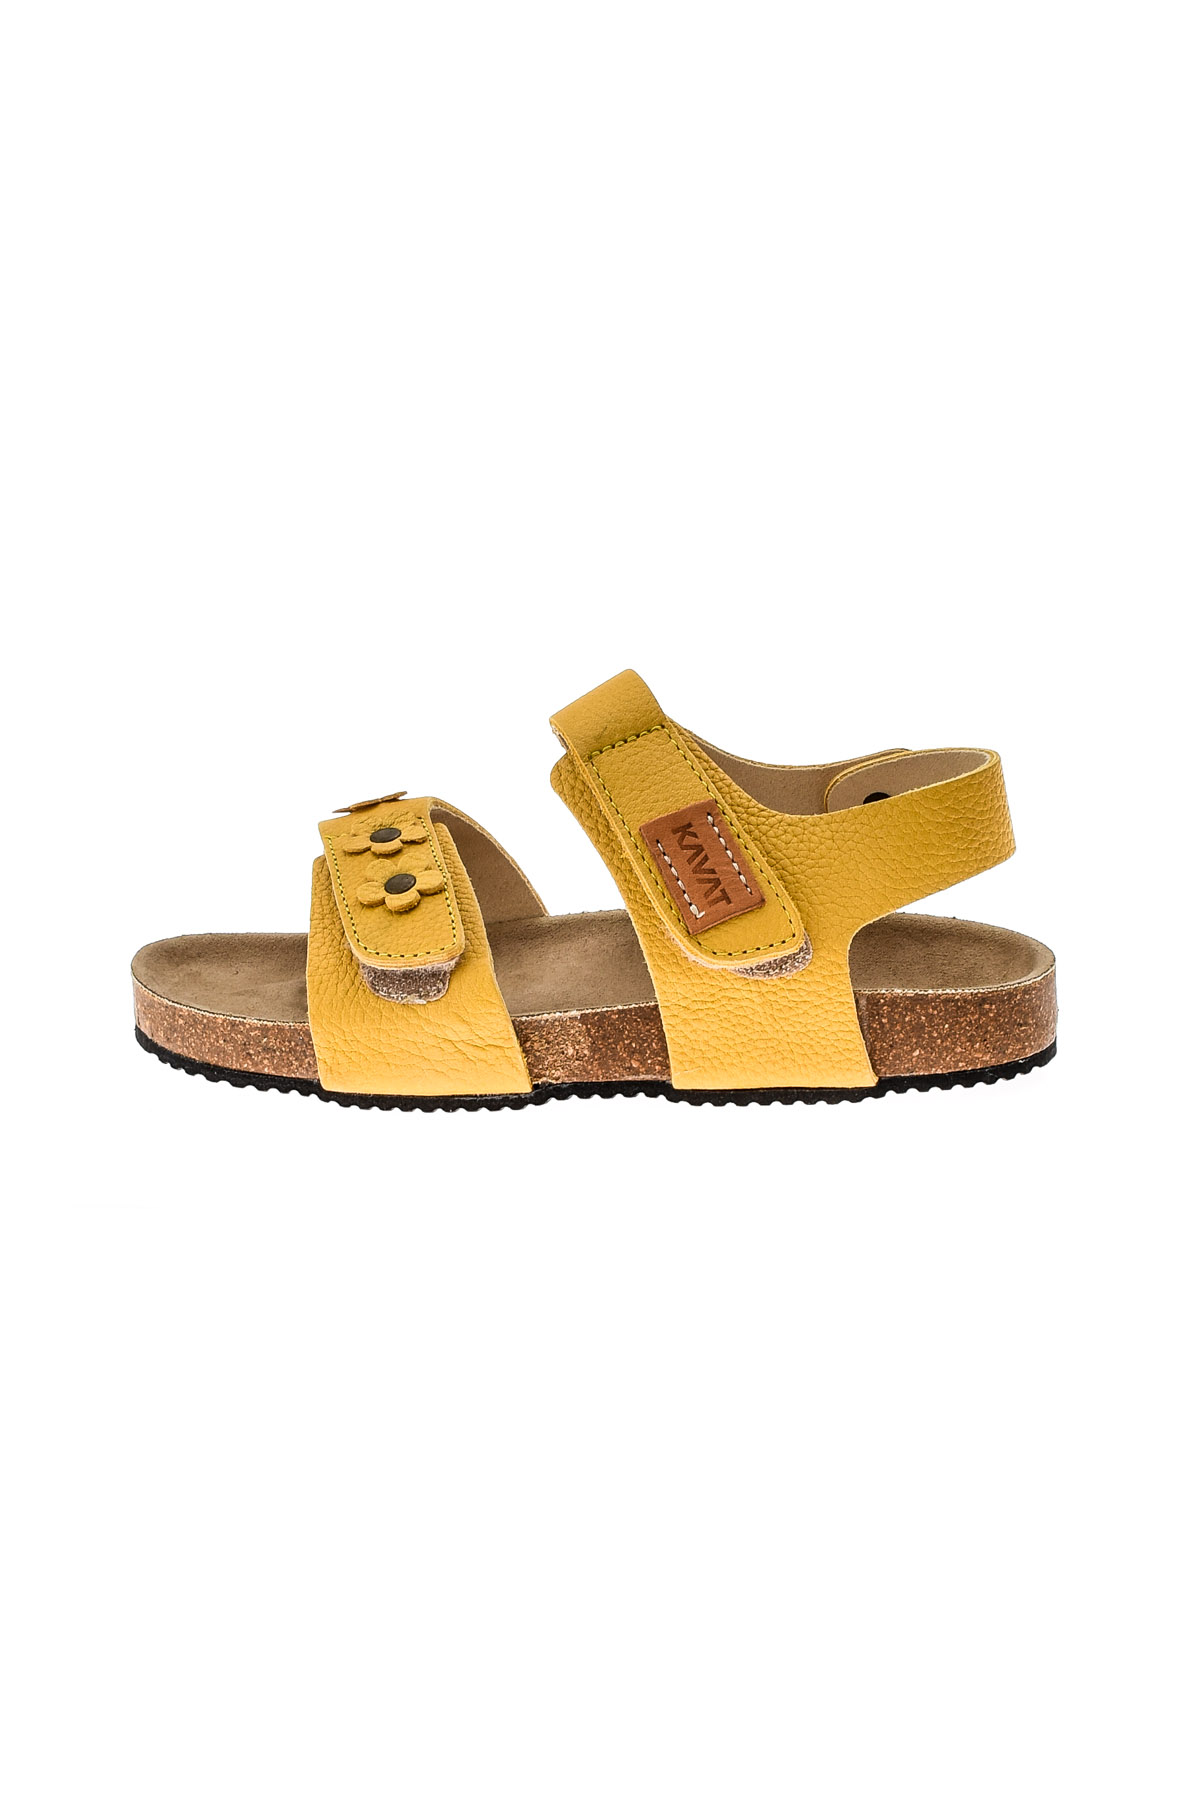 Sandals for girls - KAVAT - 0